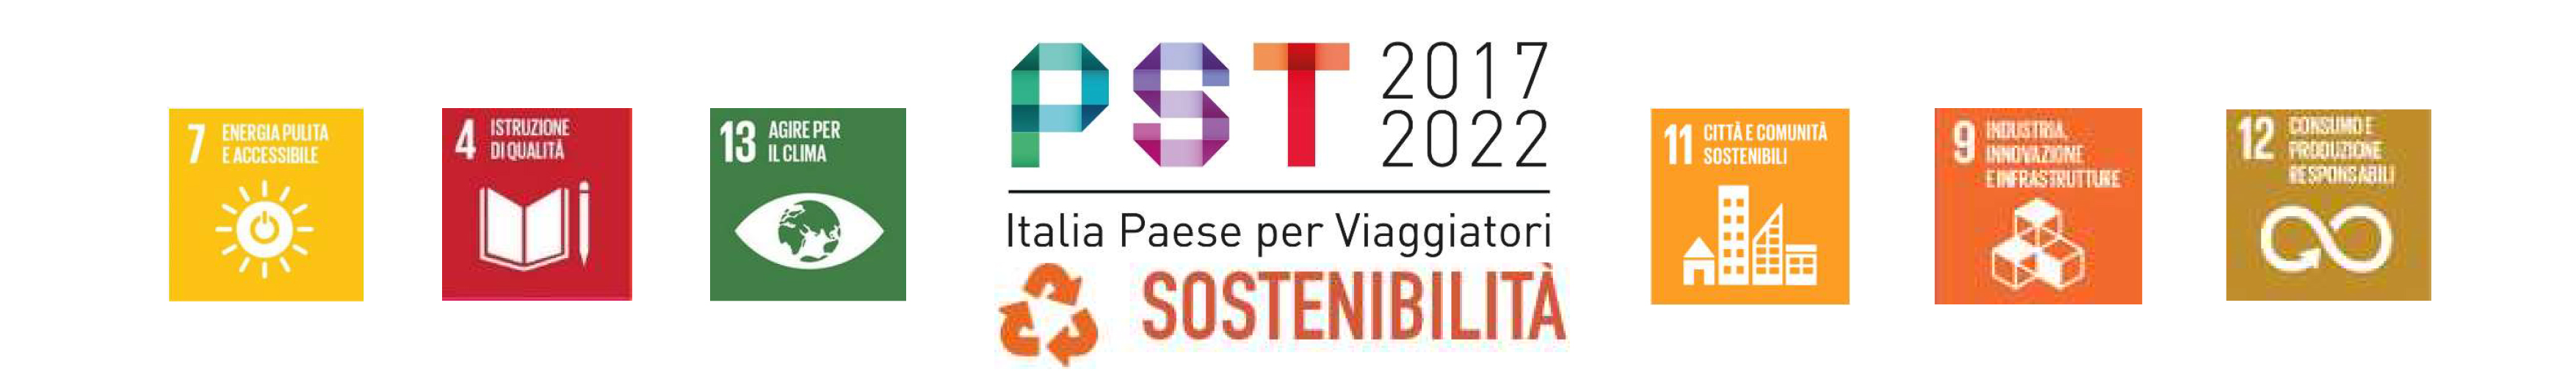 Turismo-scuola-di-sostenibilità-PST-Agenda-2030.